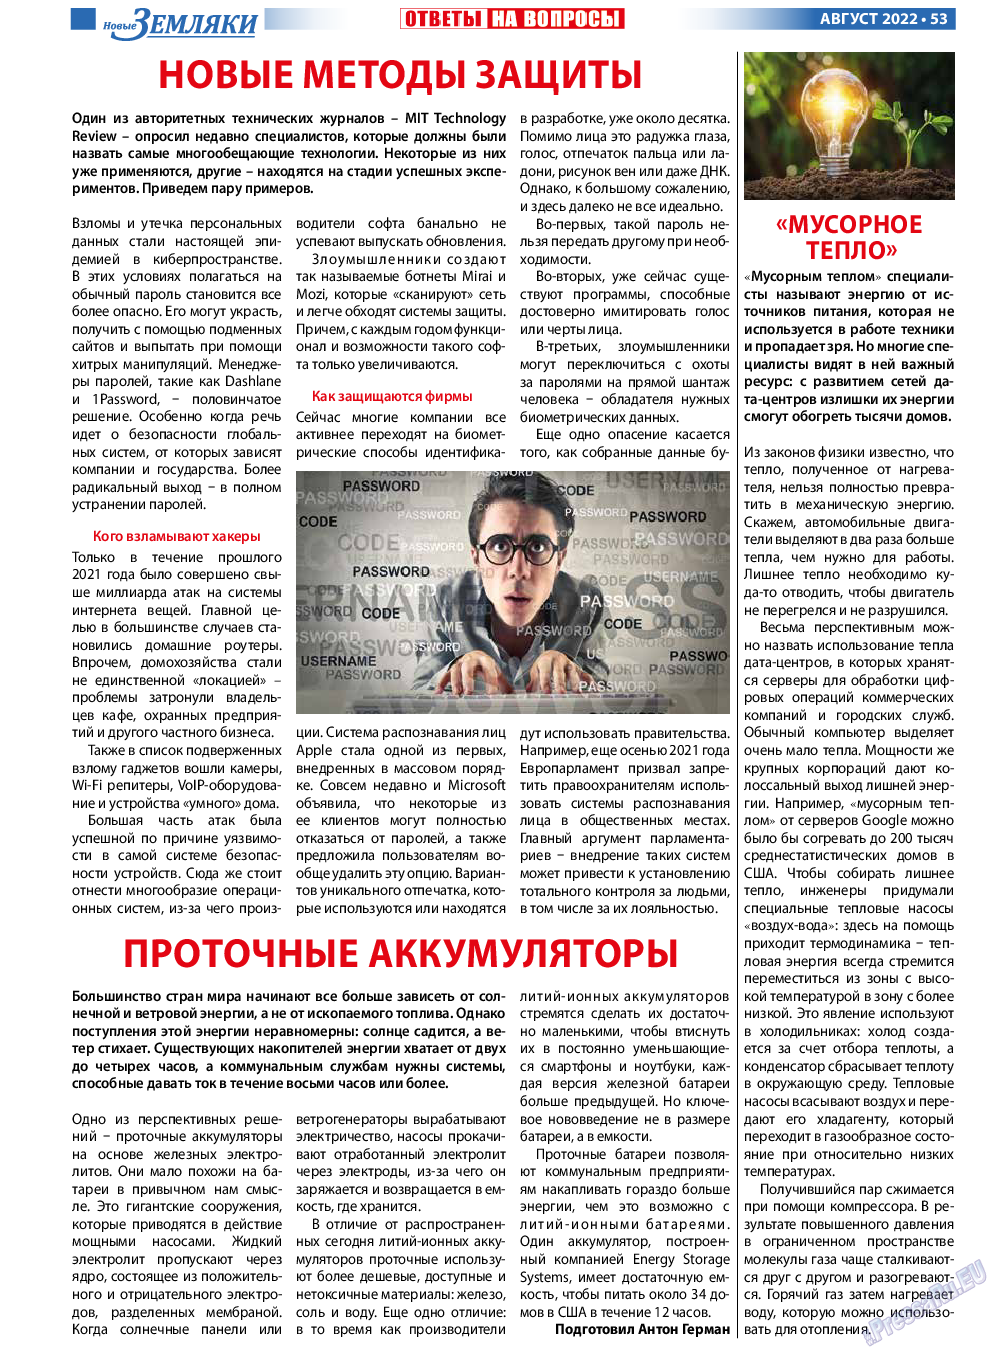 Новые Земляки, газета. 2022 №8 стр.53